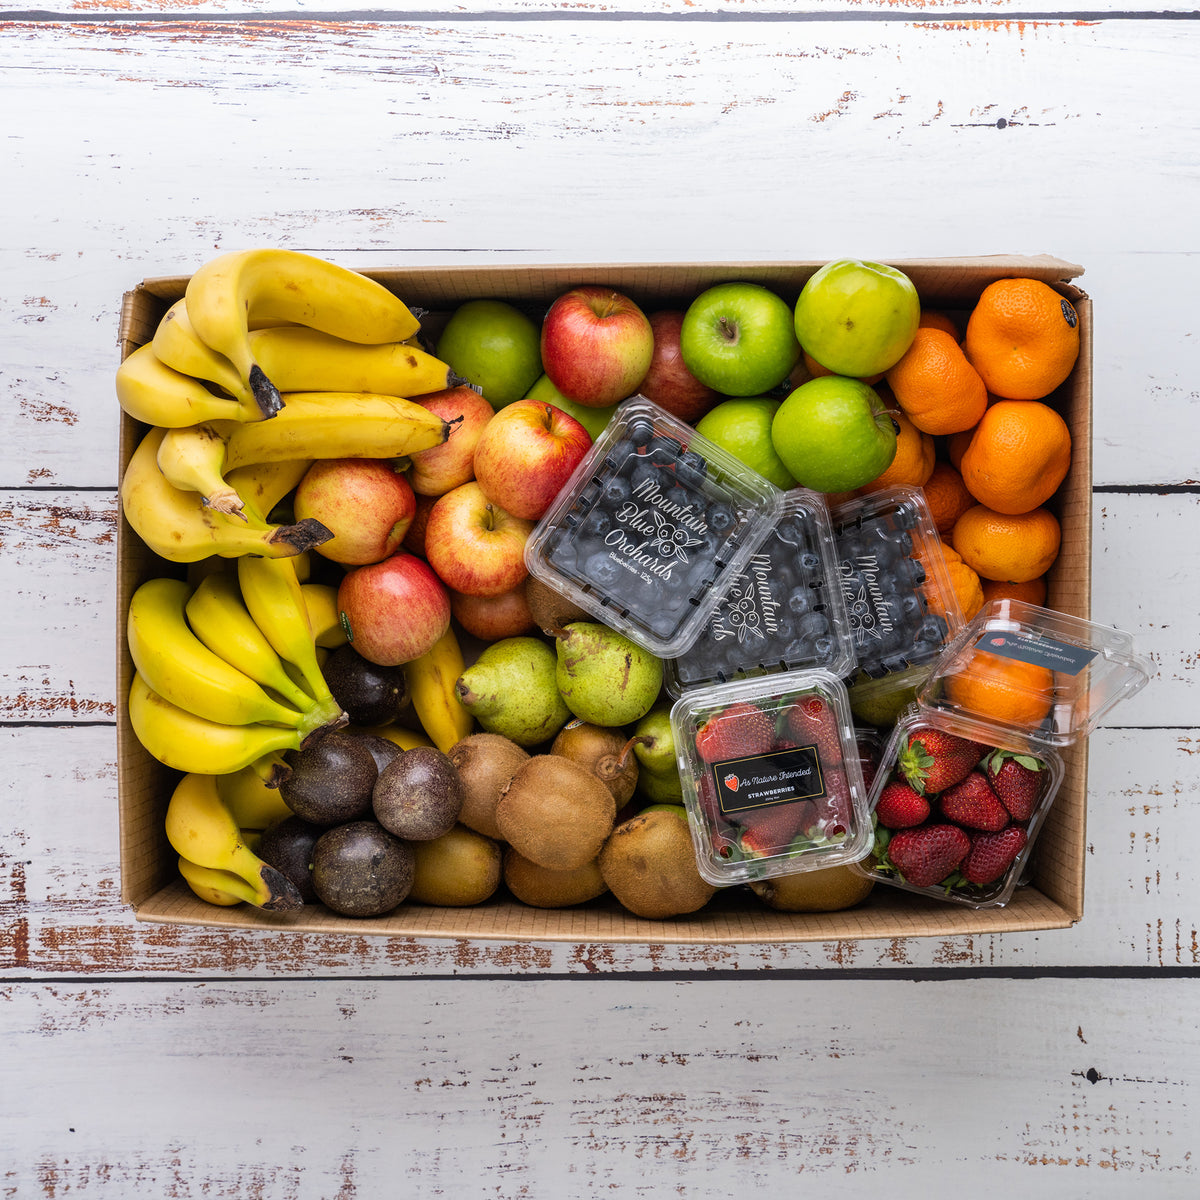 Buy Office Fruit Box From Harris Farm Online Harris Farm Markets